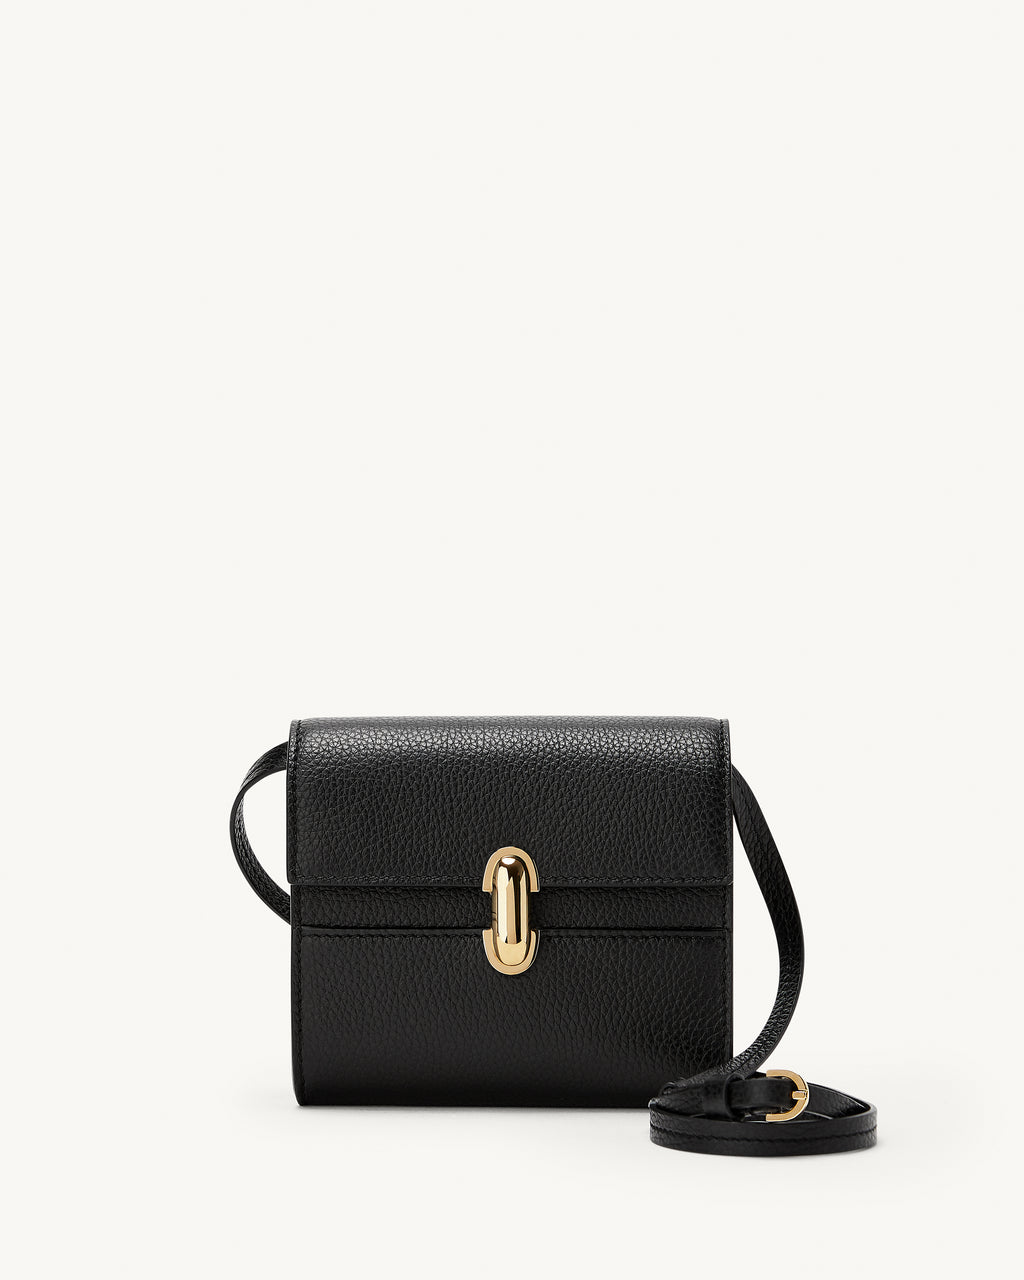 Symmetry Wallet in Black Grained Leather